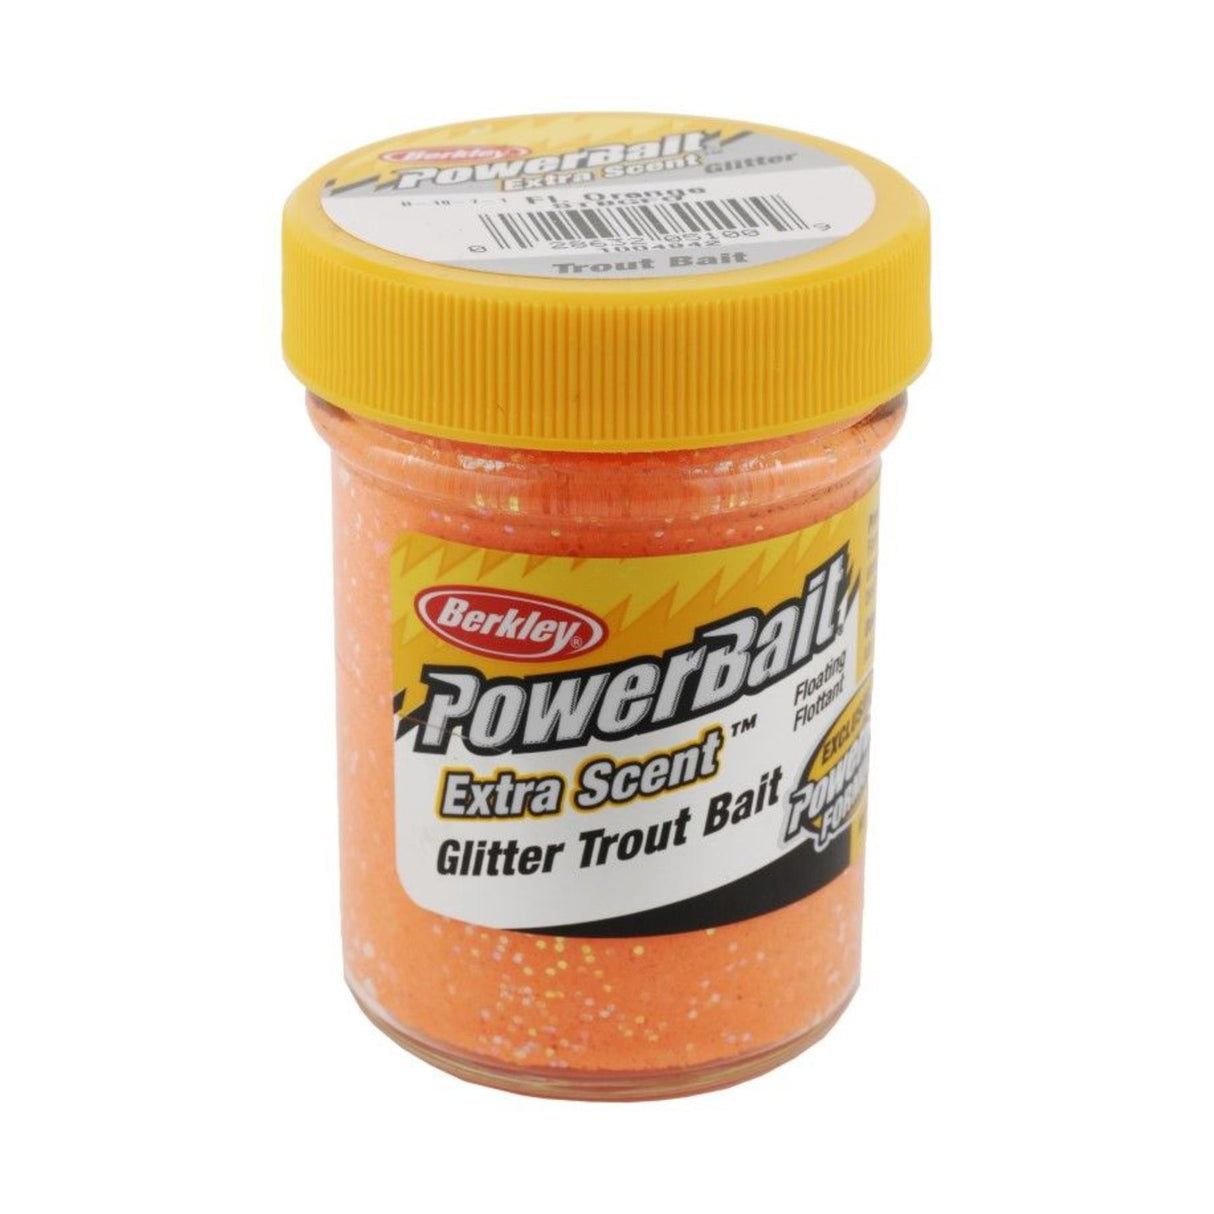 Berkley Powerbait Select Glitter Trout Bait - Fluo Orange (2pk)